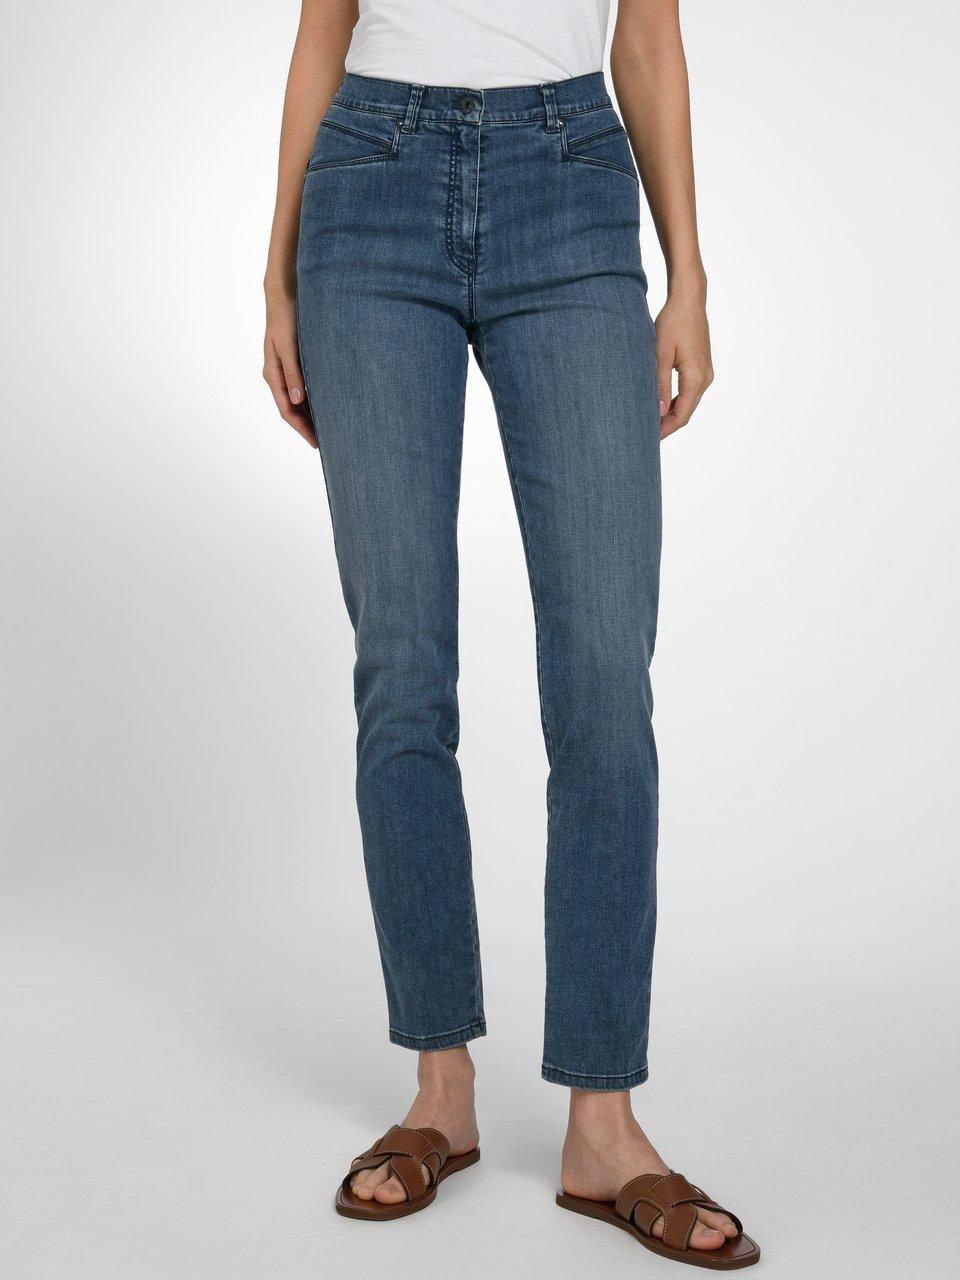 Raphaela by Brax - Comfort Plus-Zauber-Jeans Modell Caren - Dark blue denim